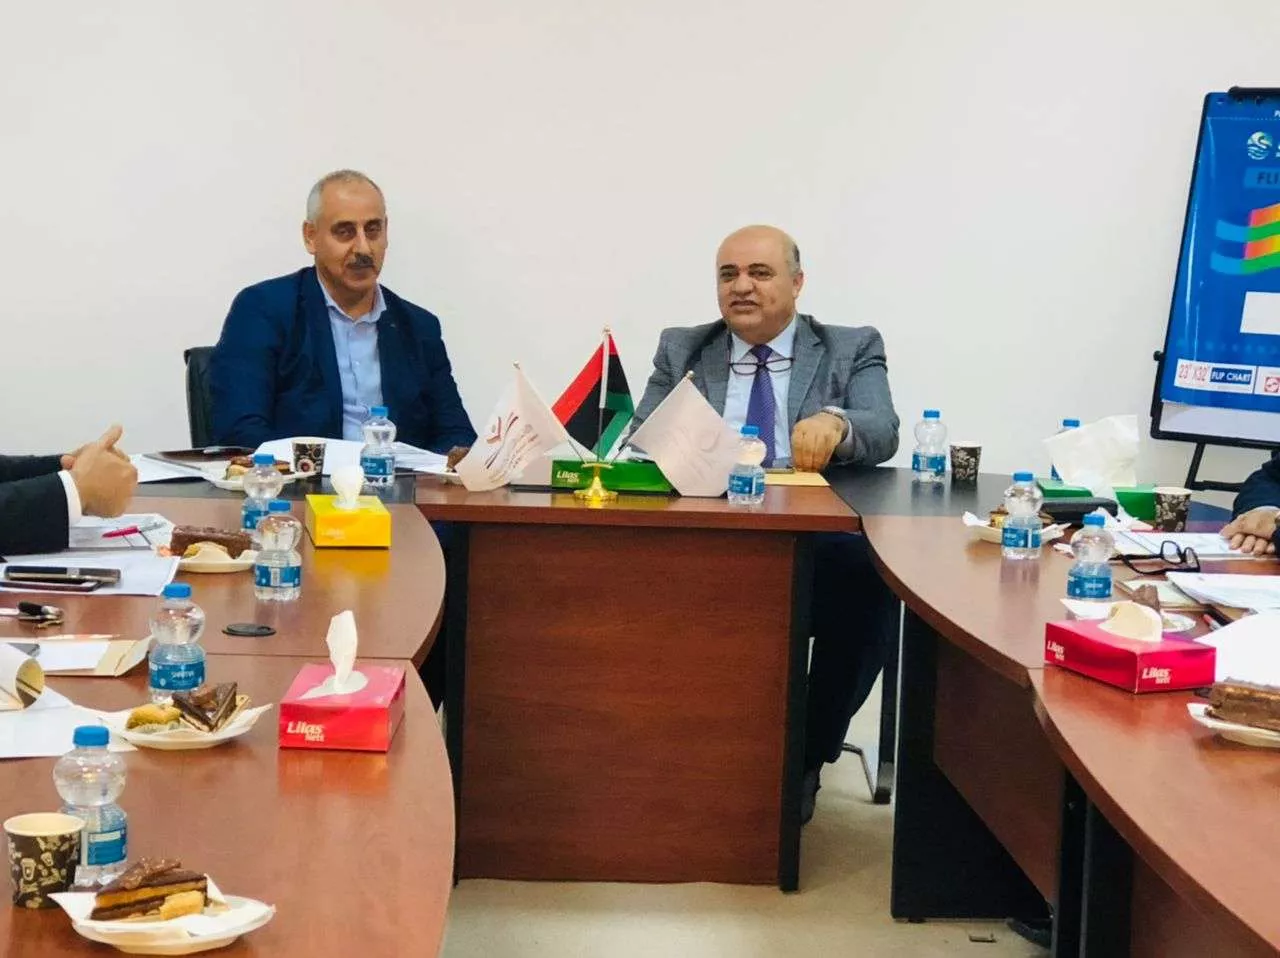 اللجنة المشتركة من الأكاديمية الليبية للدراسات العليا وهيئة الرقابة الإدارية تعقد اجتماعاُ.